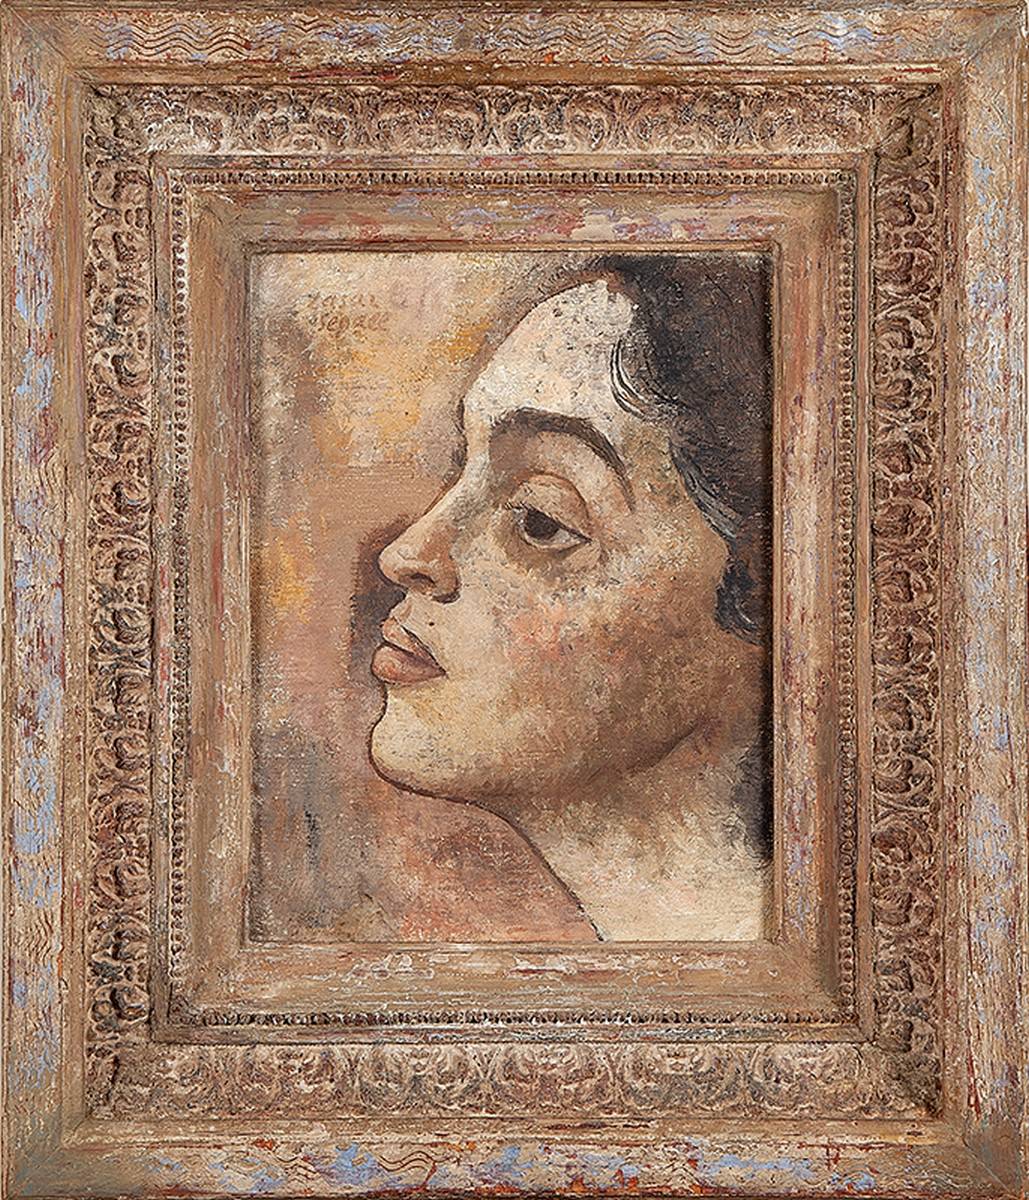 LASAR SEGALL, Portrait de Lucy. Ost, 33 x 40. Signé au cse et daté 1936.